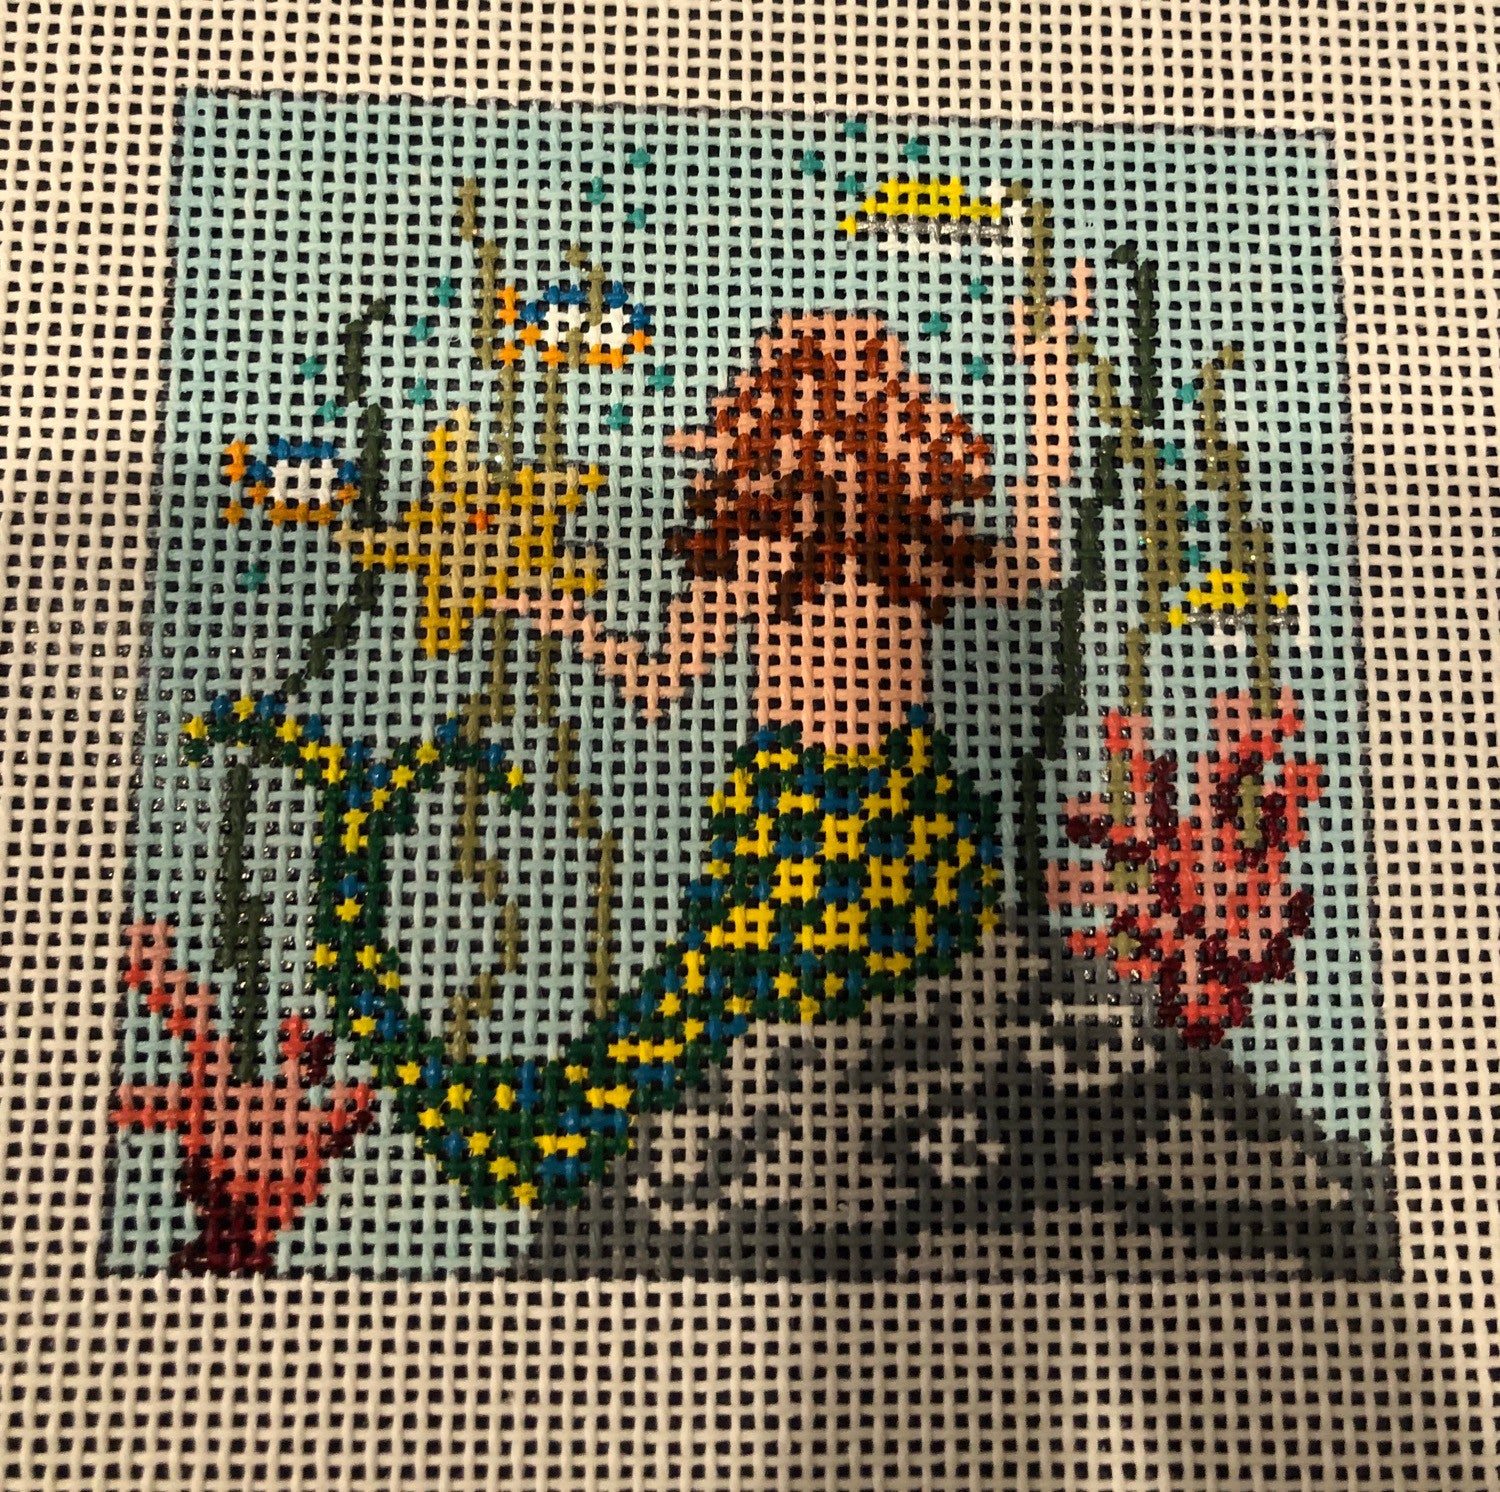 Needle Crossing Mermaid